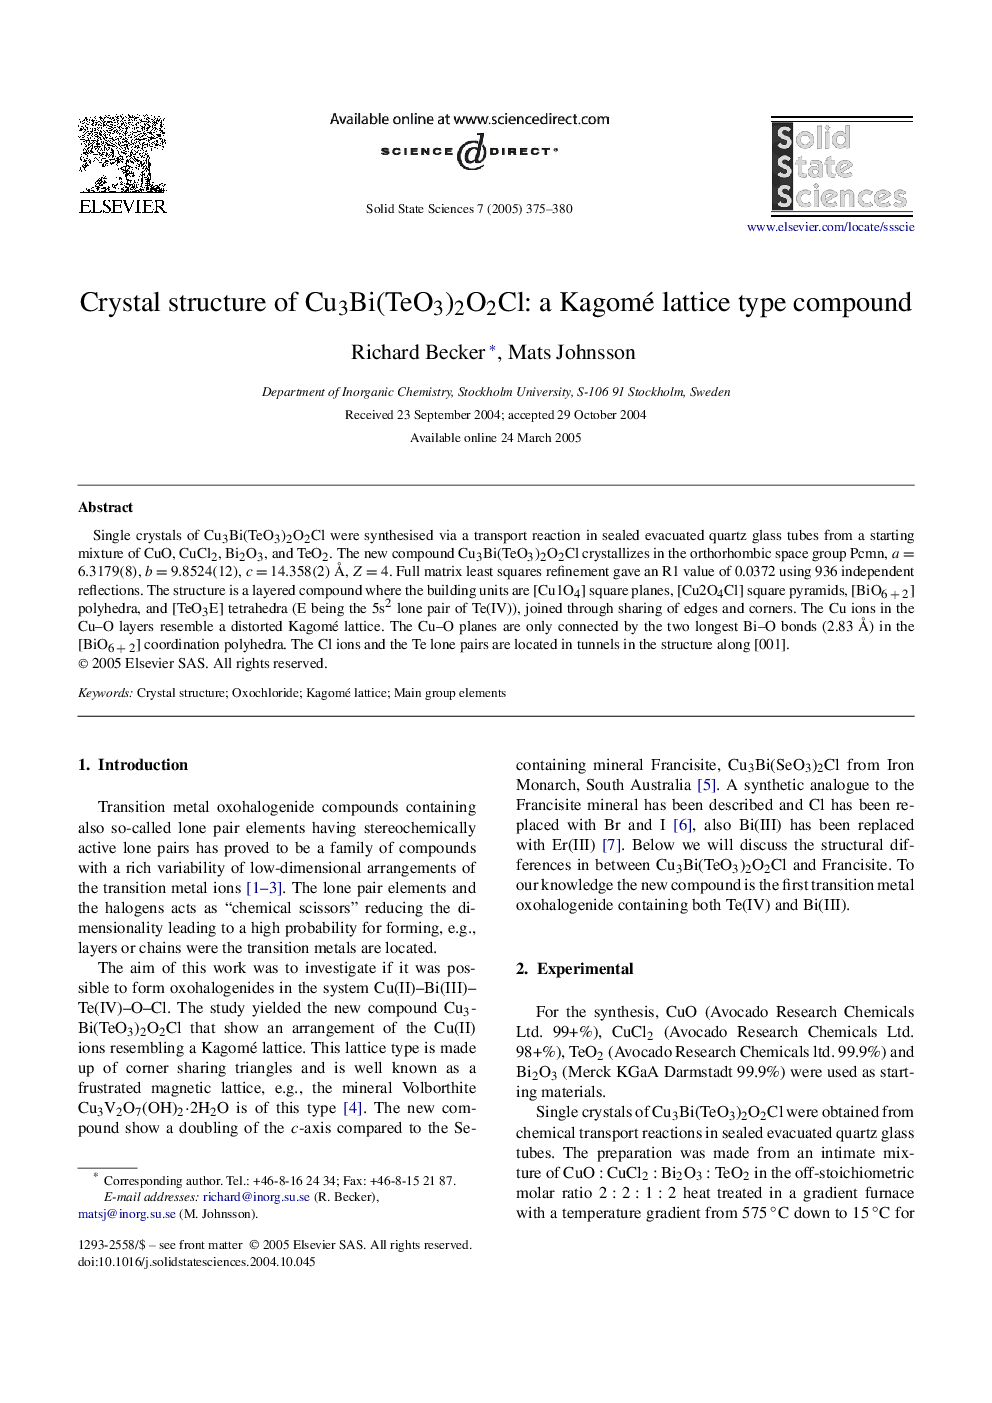 Crystal structure of Cu3Bi(TeO3)2O2Cl: a Kagomé lattice type compound